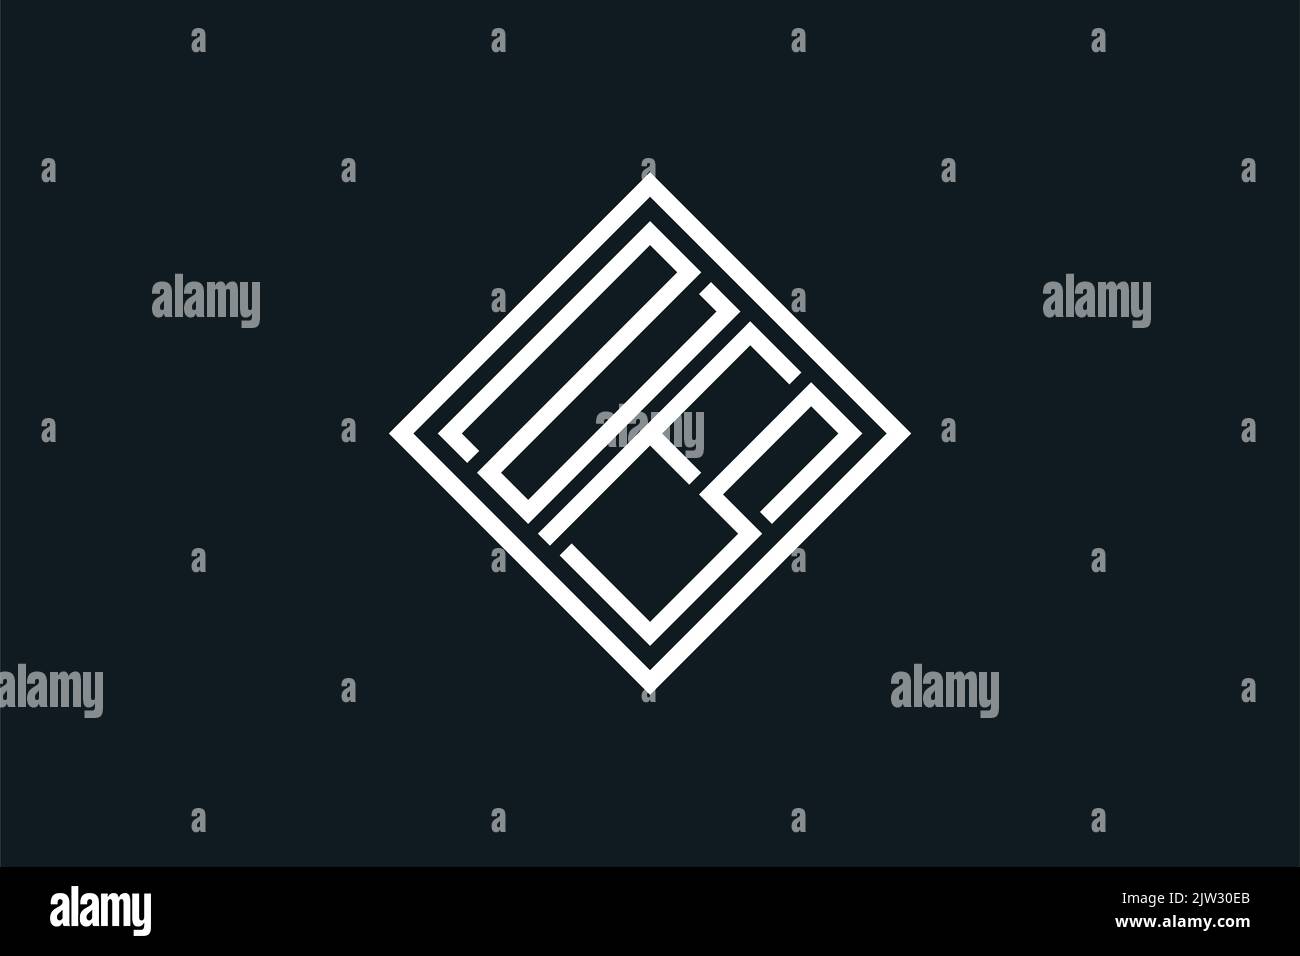 Iniziali lettera NFS Square Diamond Logo Design linea semplice minimalista art style Illustrazione Vettoriale